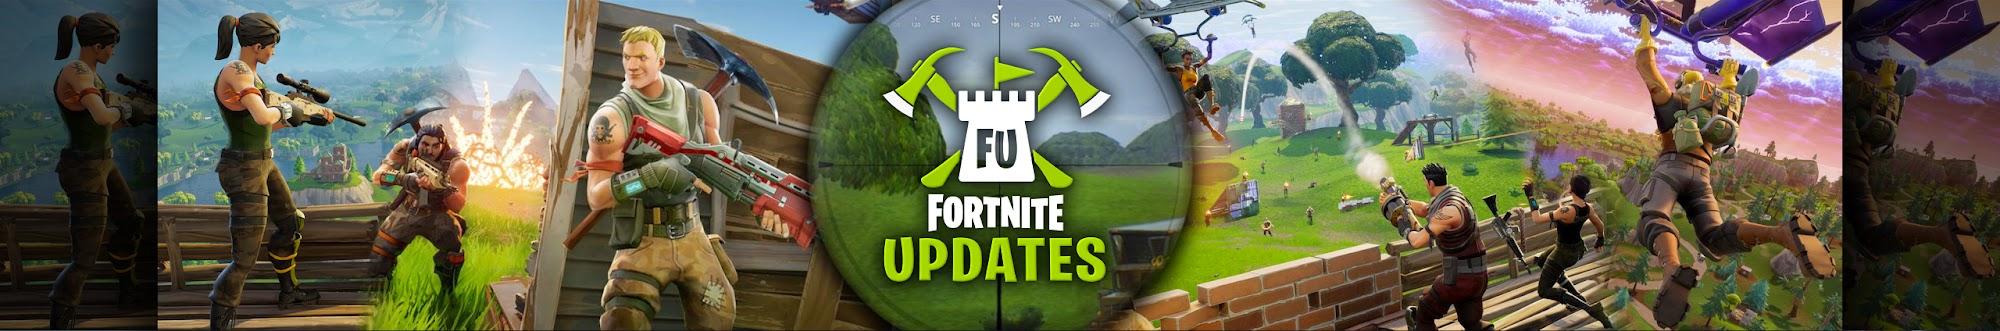 Fortnite Updates